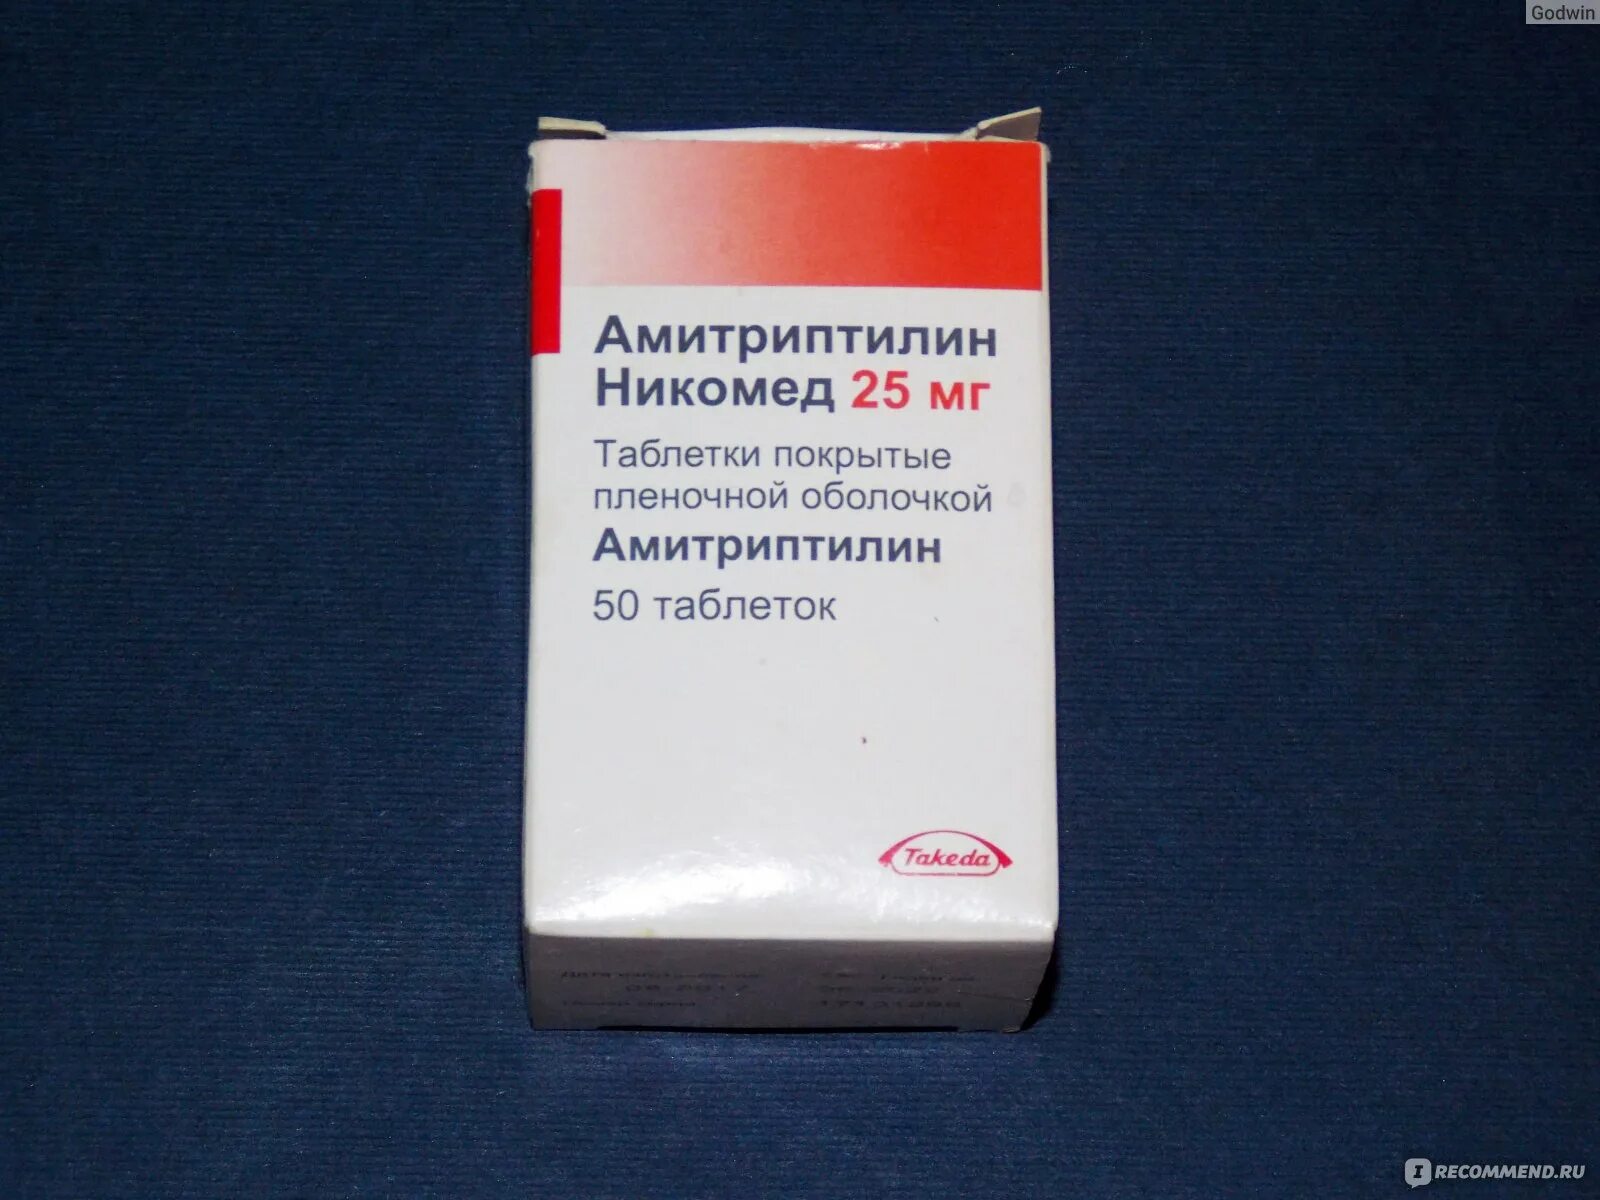 Амитриптилин никомед 25 мг инструкция отзывы. Амитриптилин Никомед. Варфарин Никомед. Фликсотид 50. Фликсотид аэрозоль.